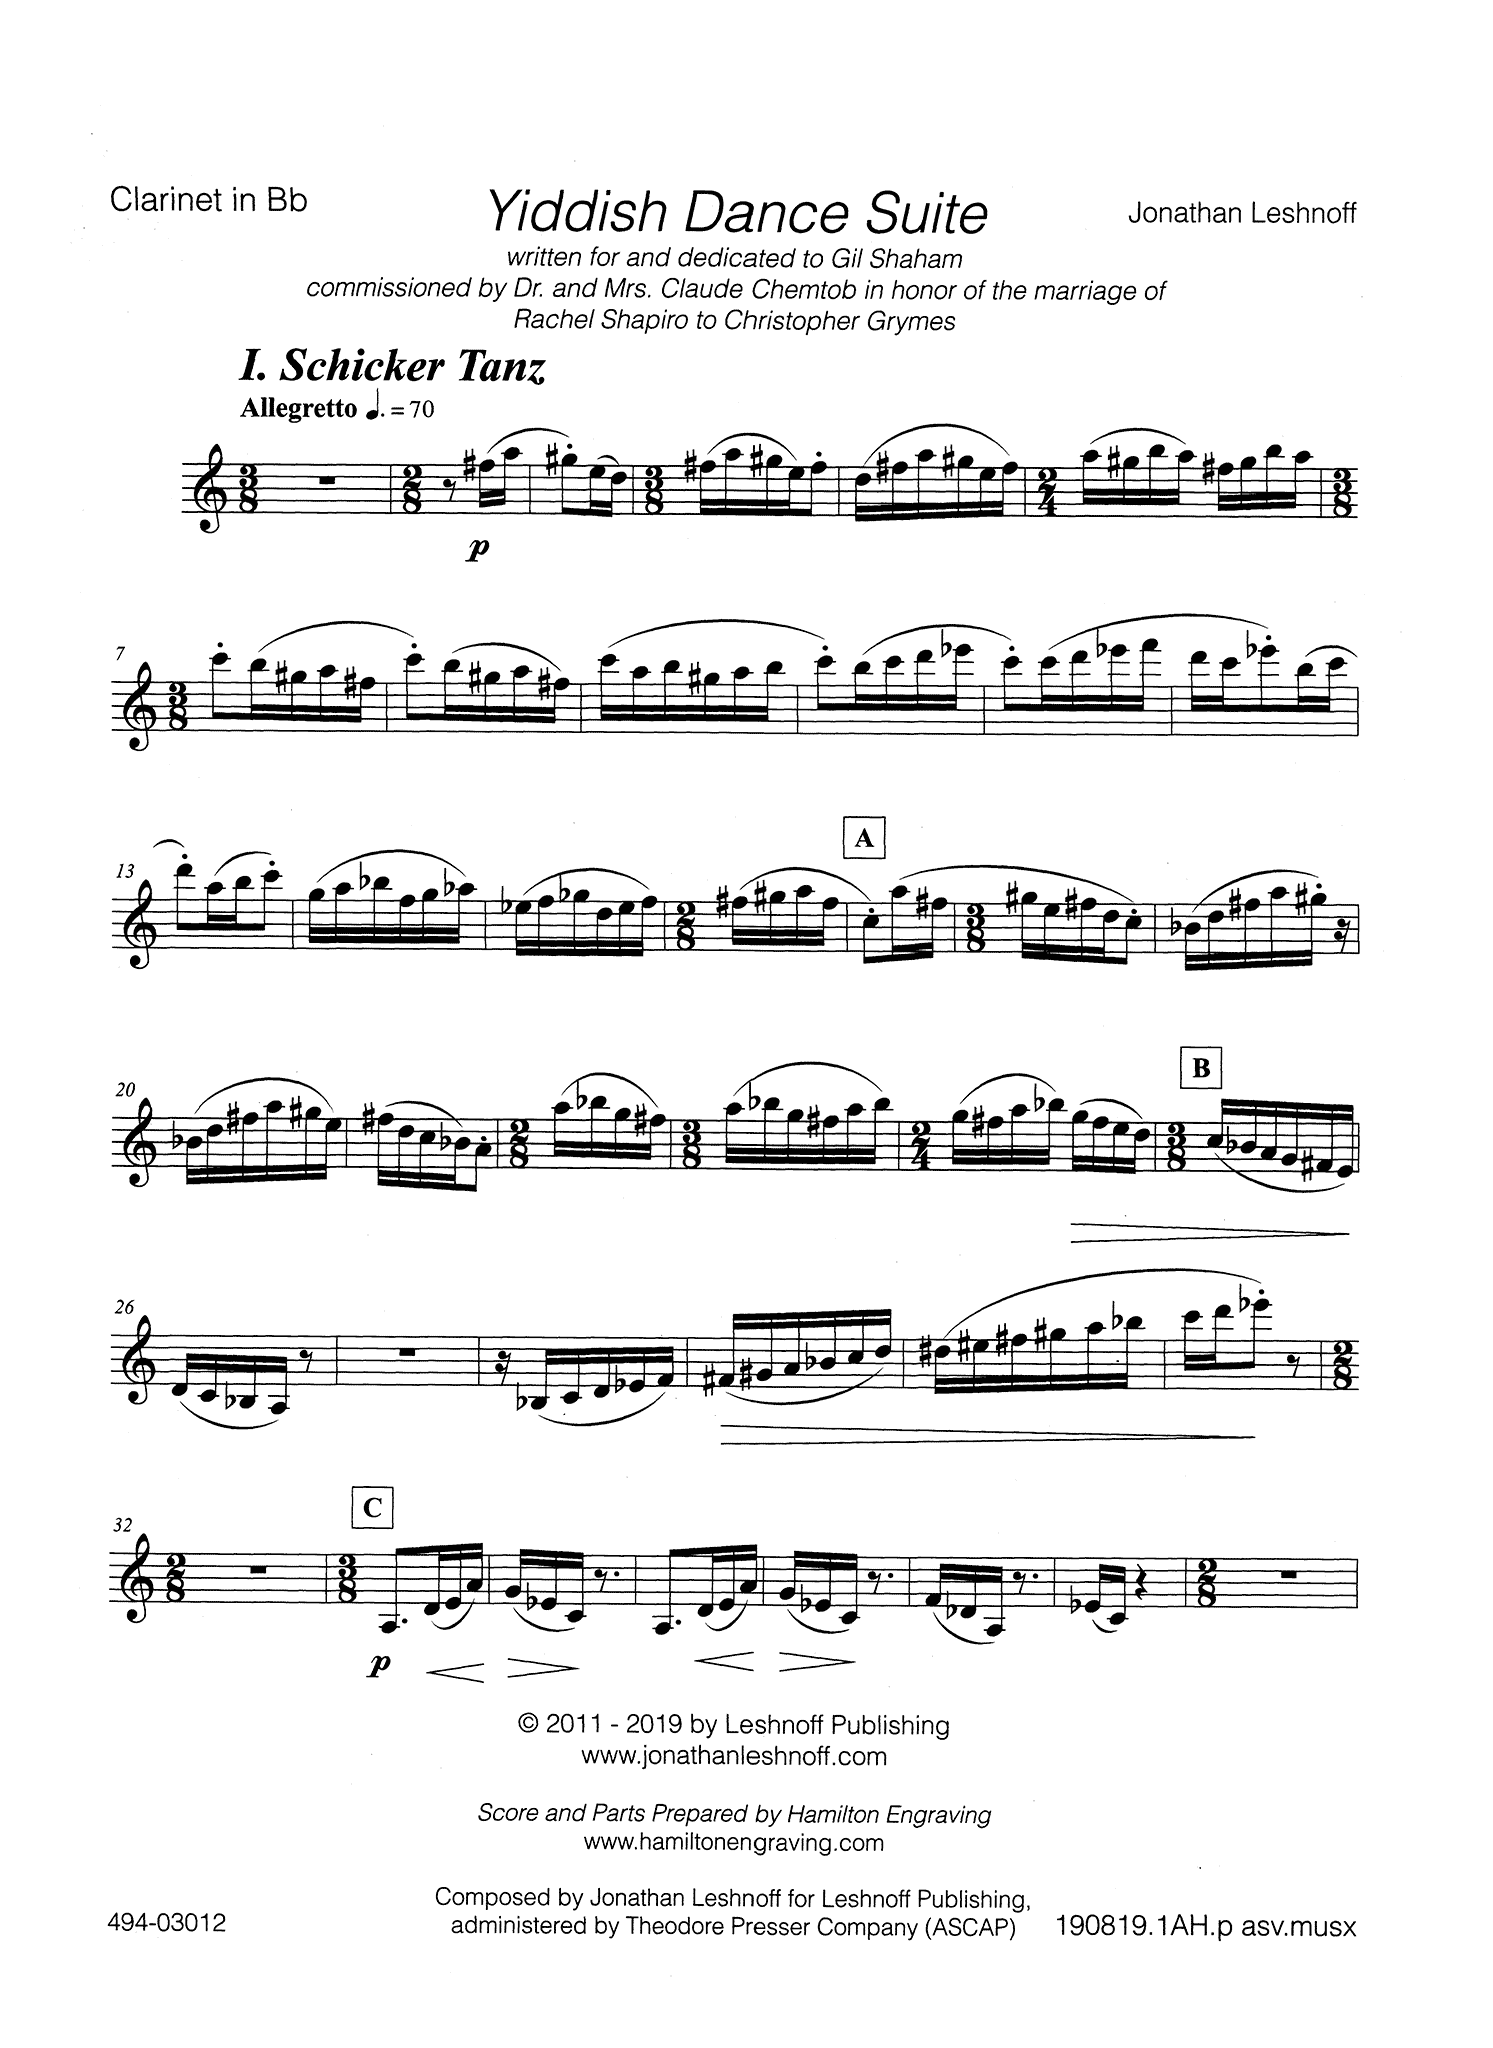 Leshnoff Yiddish Suite Clarinet part